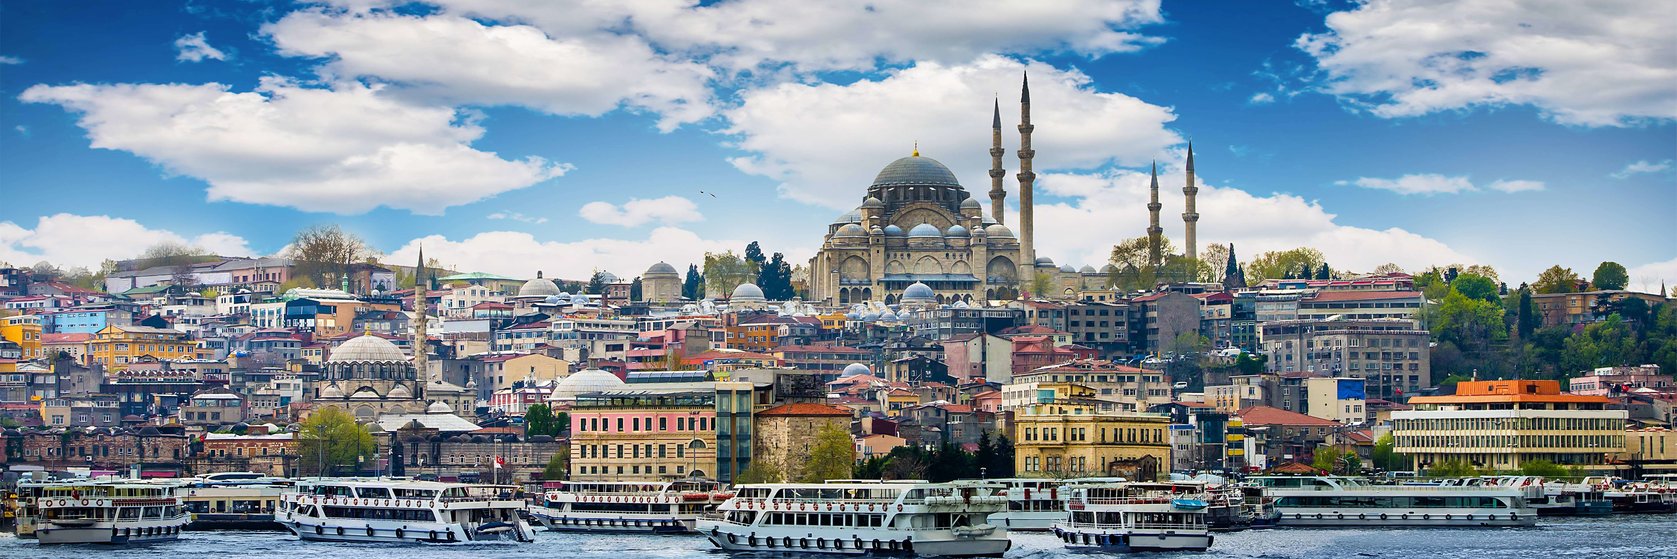 Tipy na výlety v Istanbulu - v Sabize Gokcen